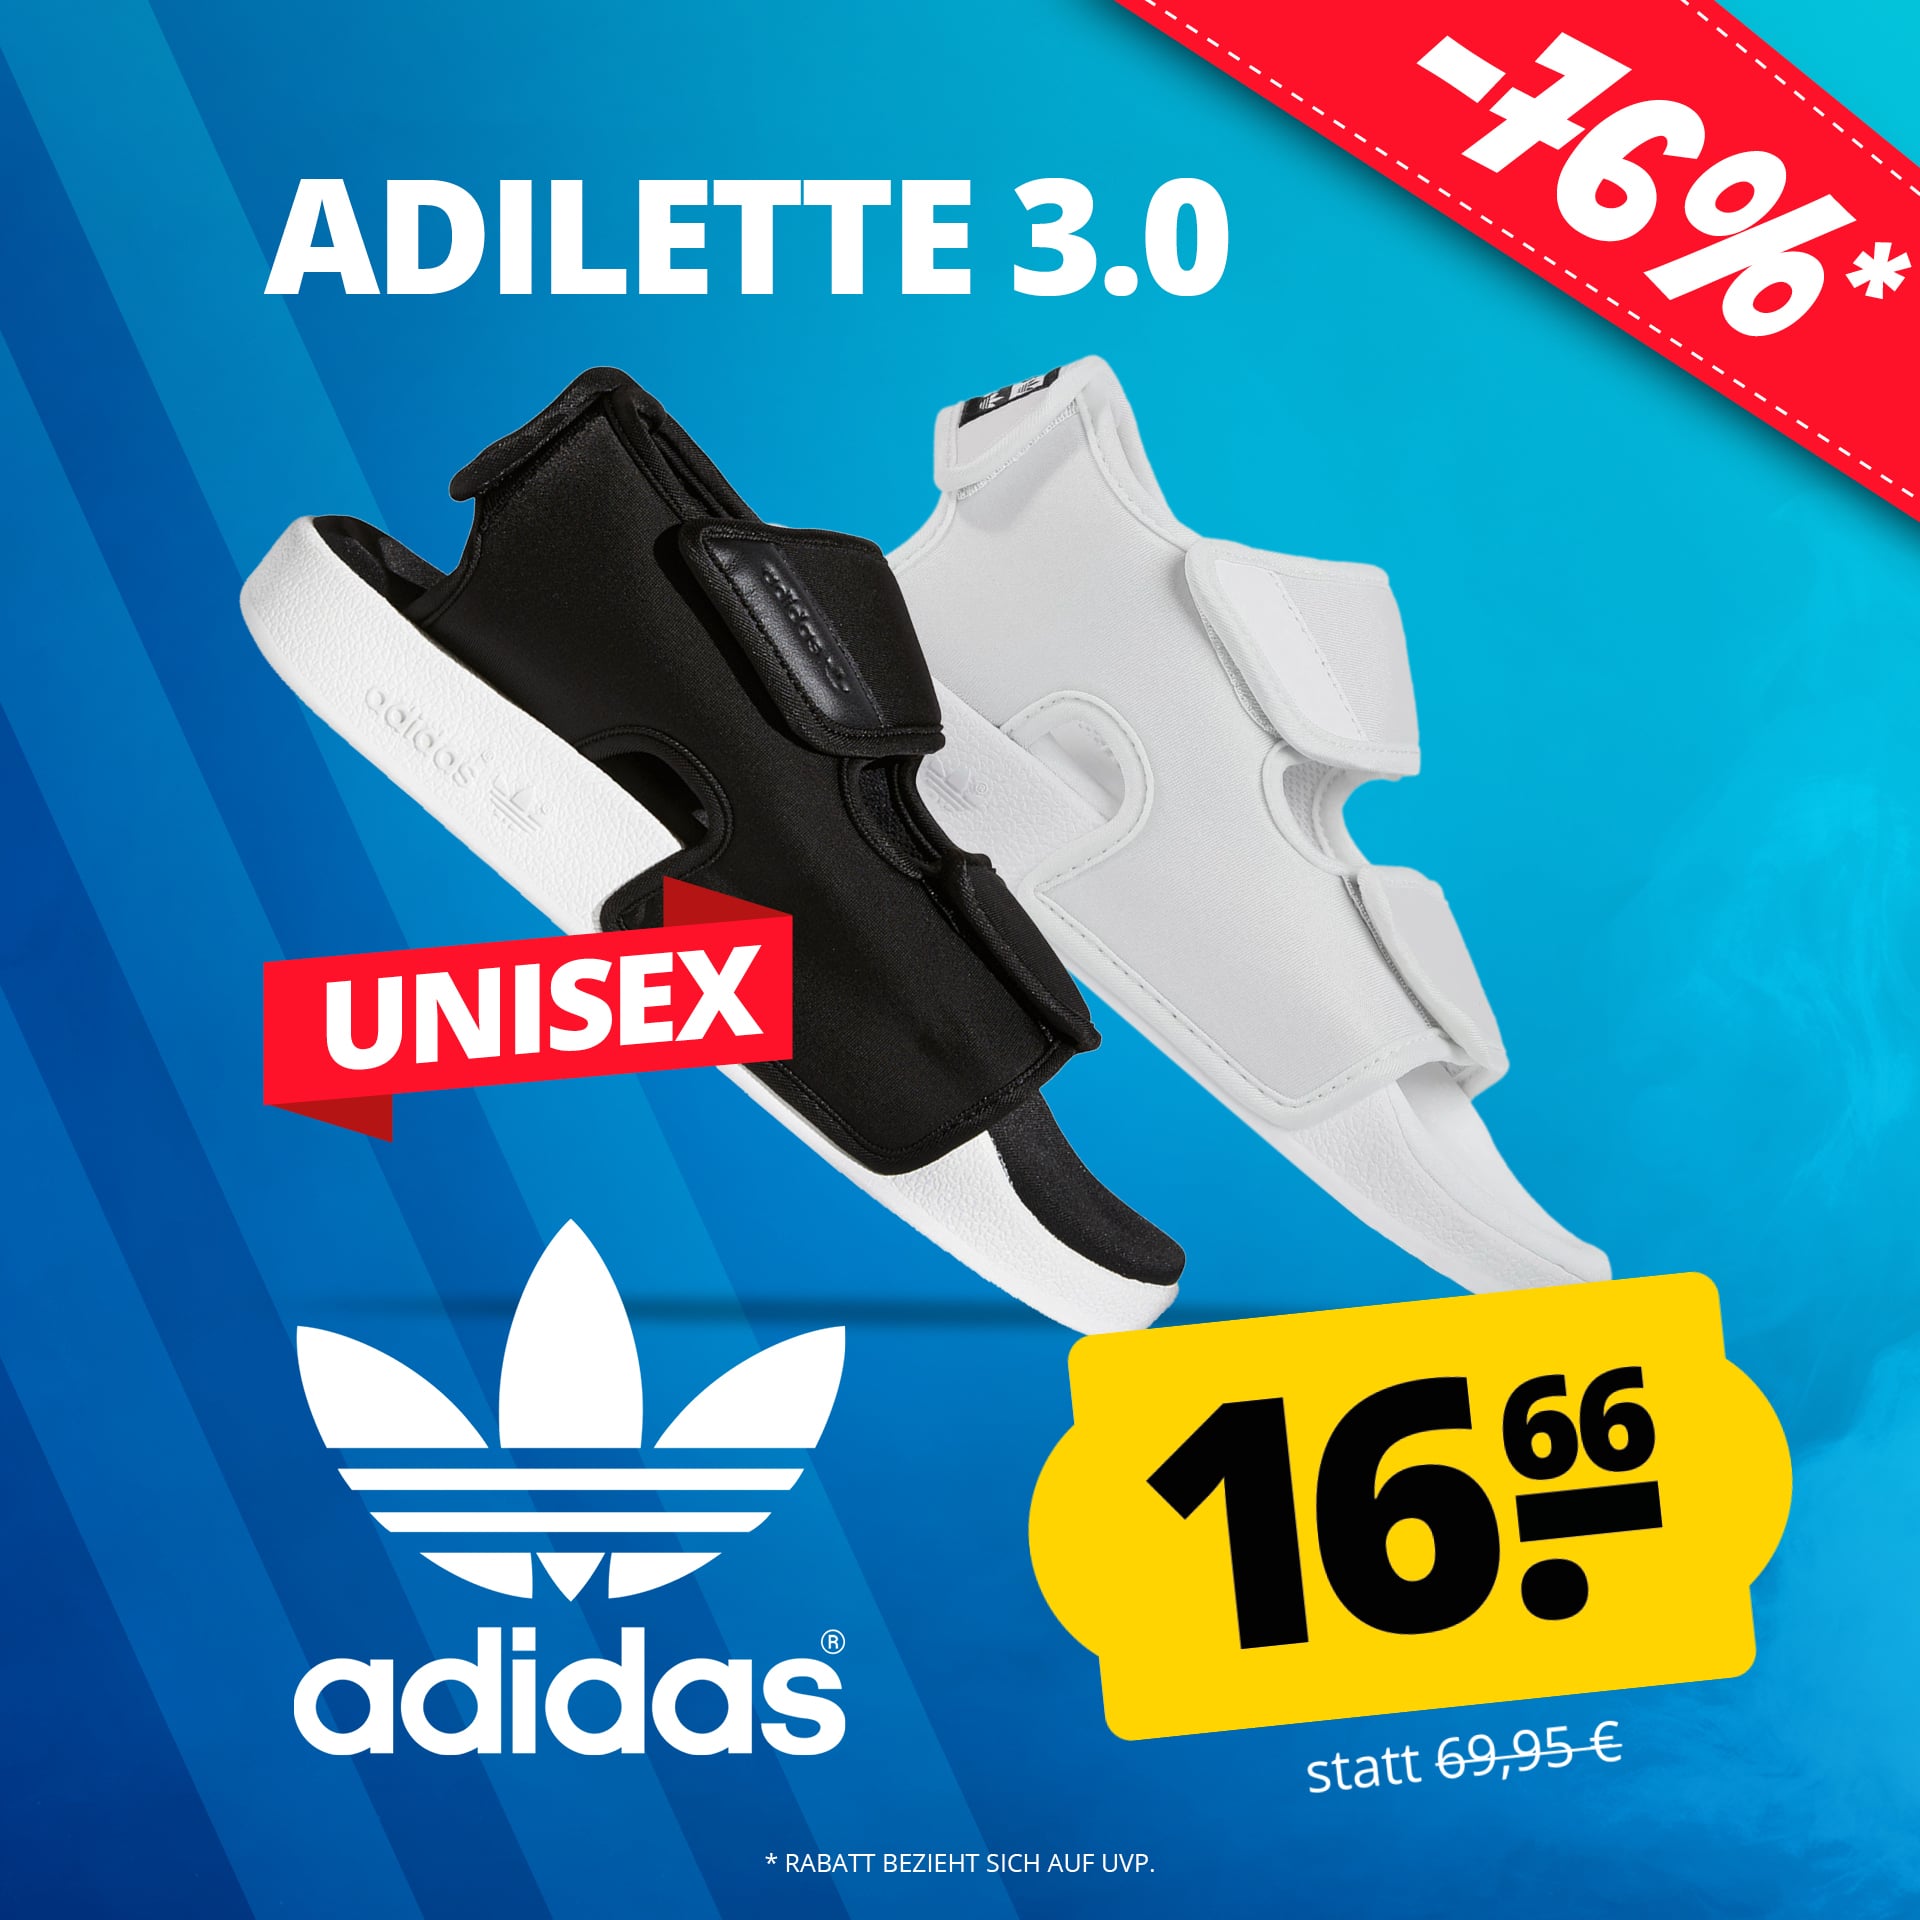 adidas Originals adilette 3.0 Unisex Sandalen für 20,61€